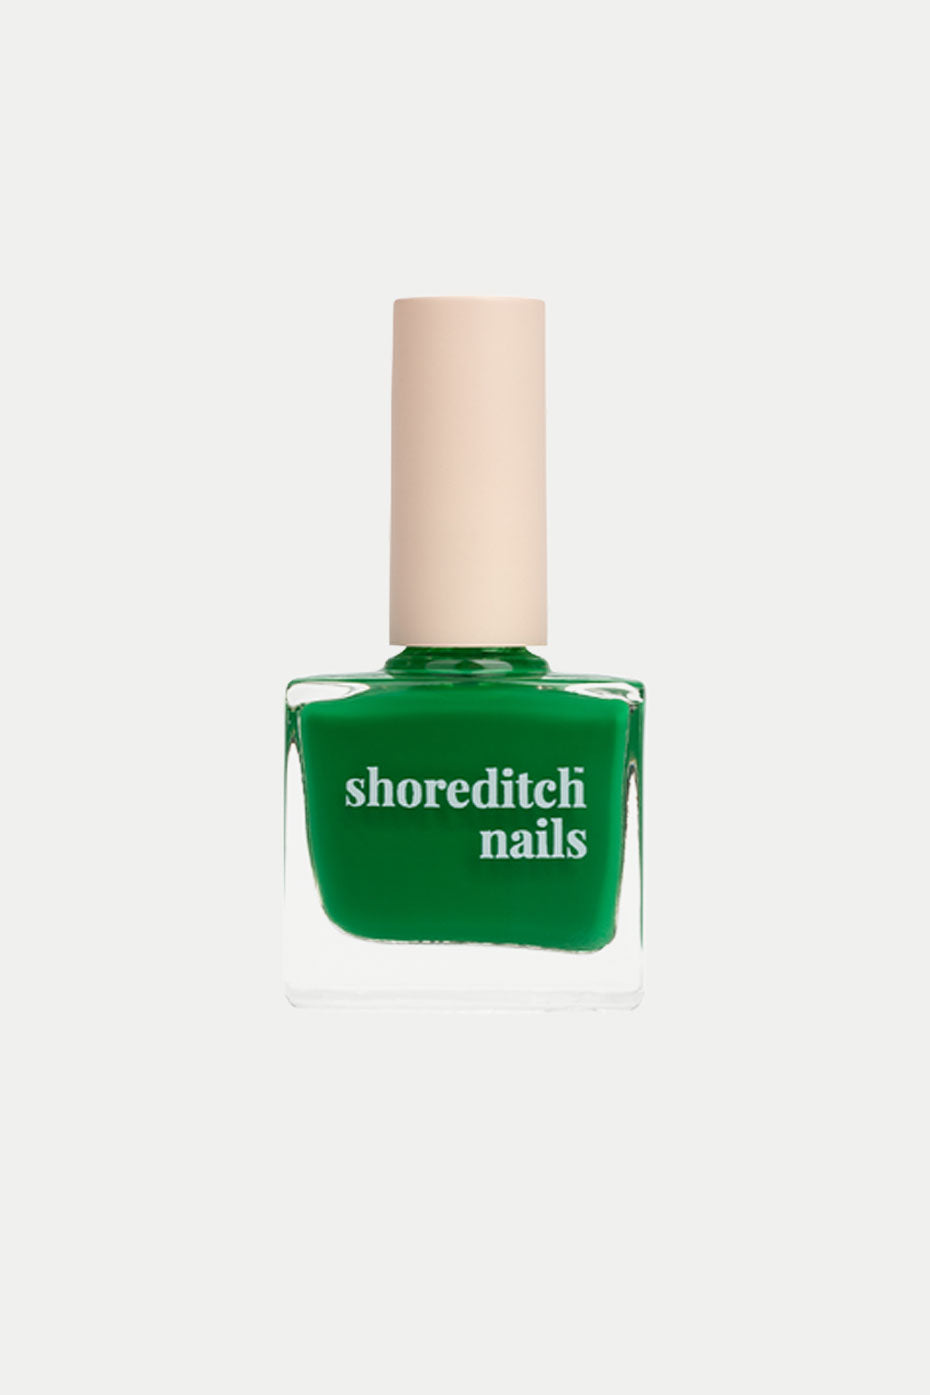 shoreditch-nails-the-broadway-market-nail-polish